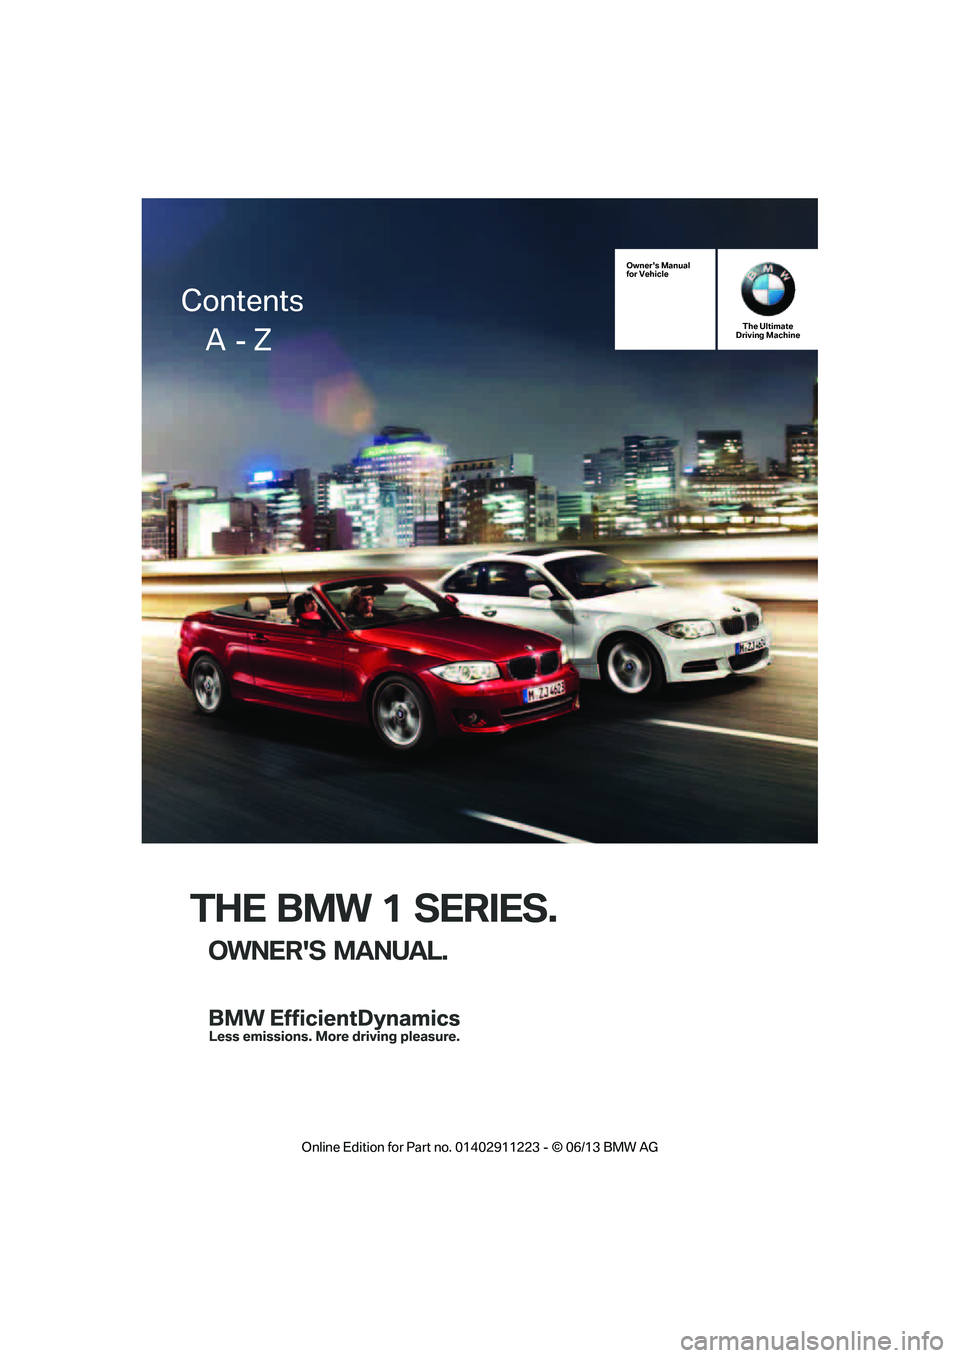 BMW 135IS CONVERTIBLE 2013  Owners Manual THE BMW 1 SERIES.
OWNERS MANUAL.
Owners Manual
for VehicleThe Ultimate
Driving Machine
Contents
     A  - Z

�2�Q�O�L�Q�H �(�G�L�W�L�R�Q �I�R�U �3�D�U�W �Q�R� ����������� � �